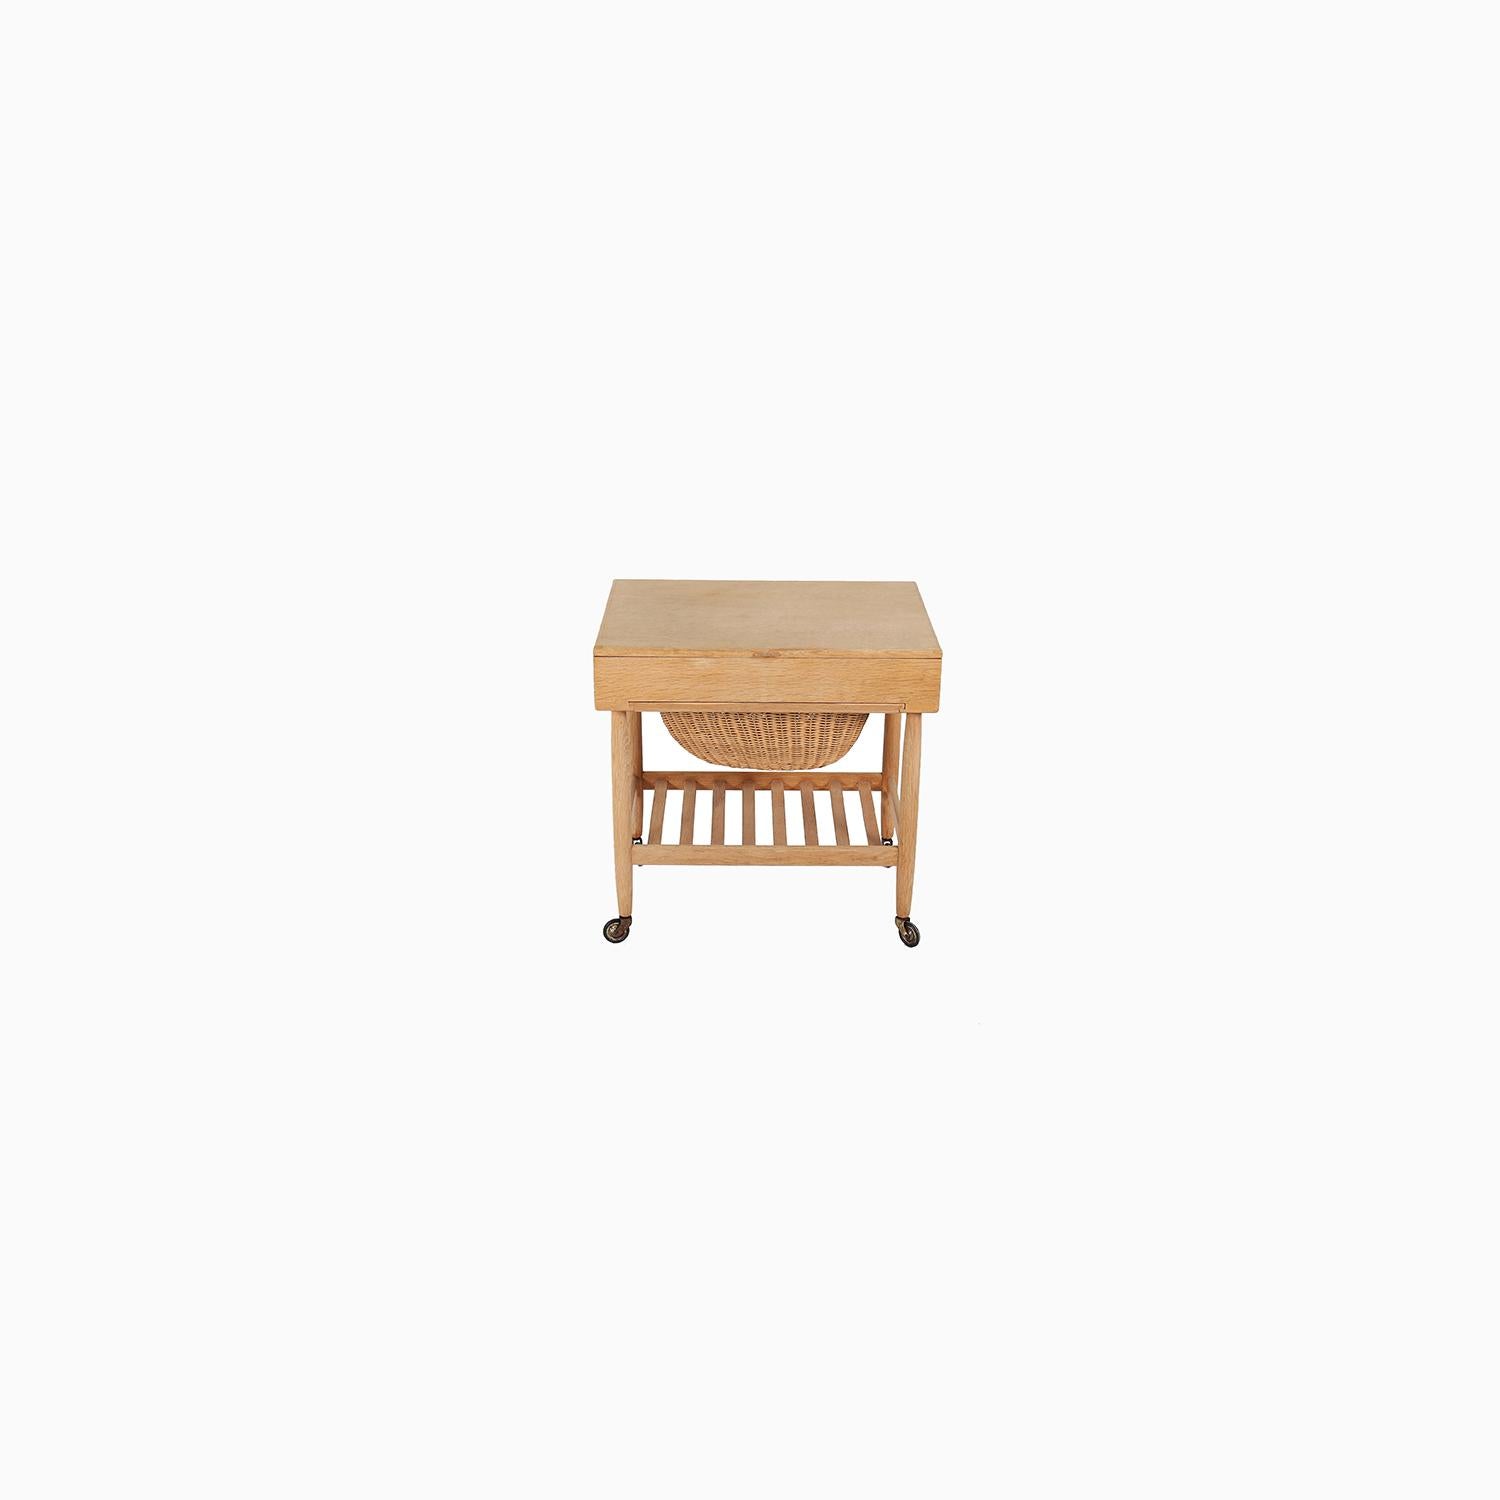 Une table à couture de style danois moderne conçue par Ejvind Johansson. Une pièce de design très fonctionnelle, que vous l'utilisiez pour la couture ou non. Construit en chêne avec une finition savon. Cette pièce sera nettoyée à l'achat.


La